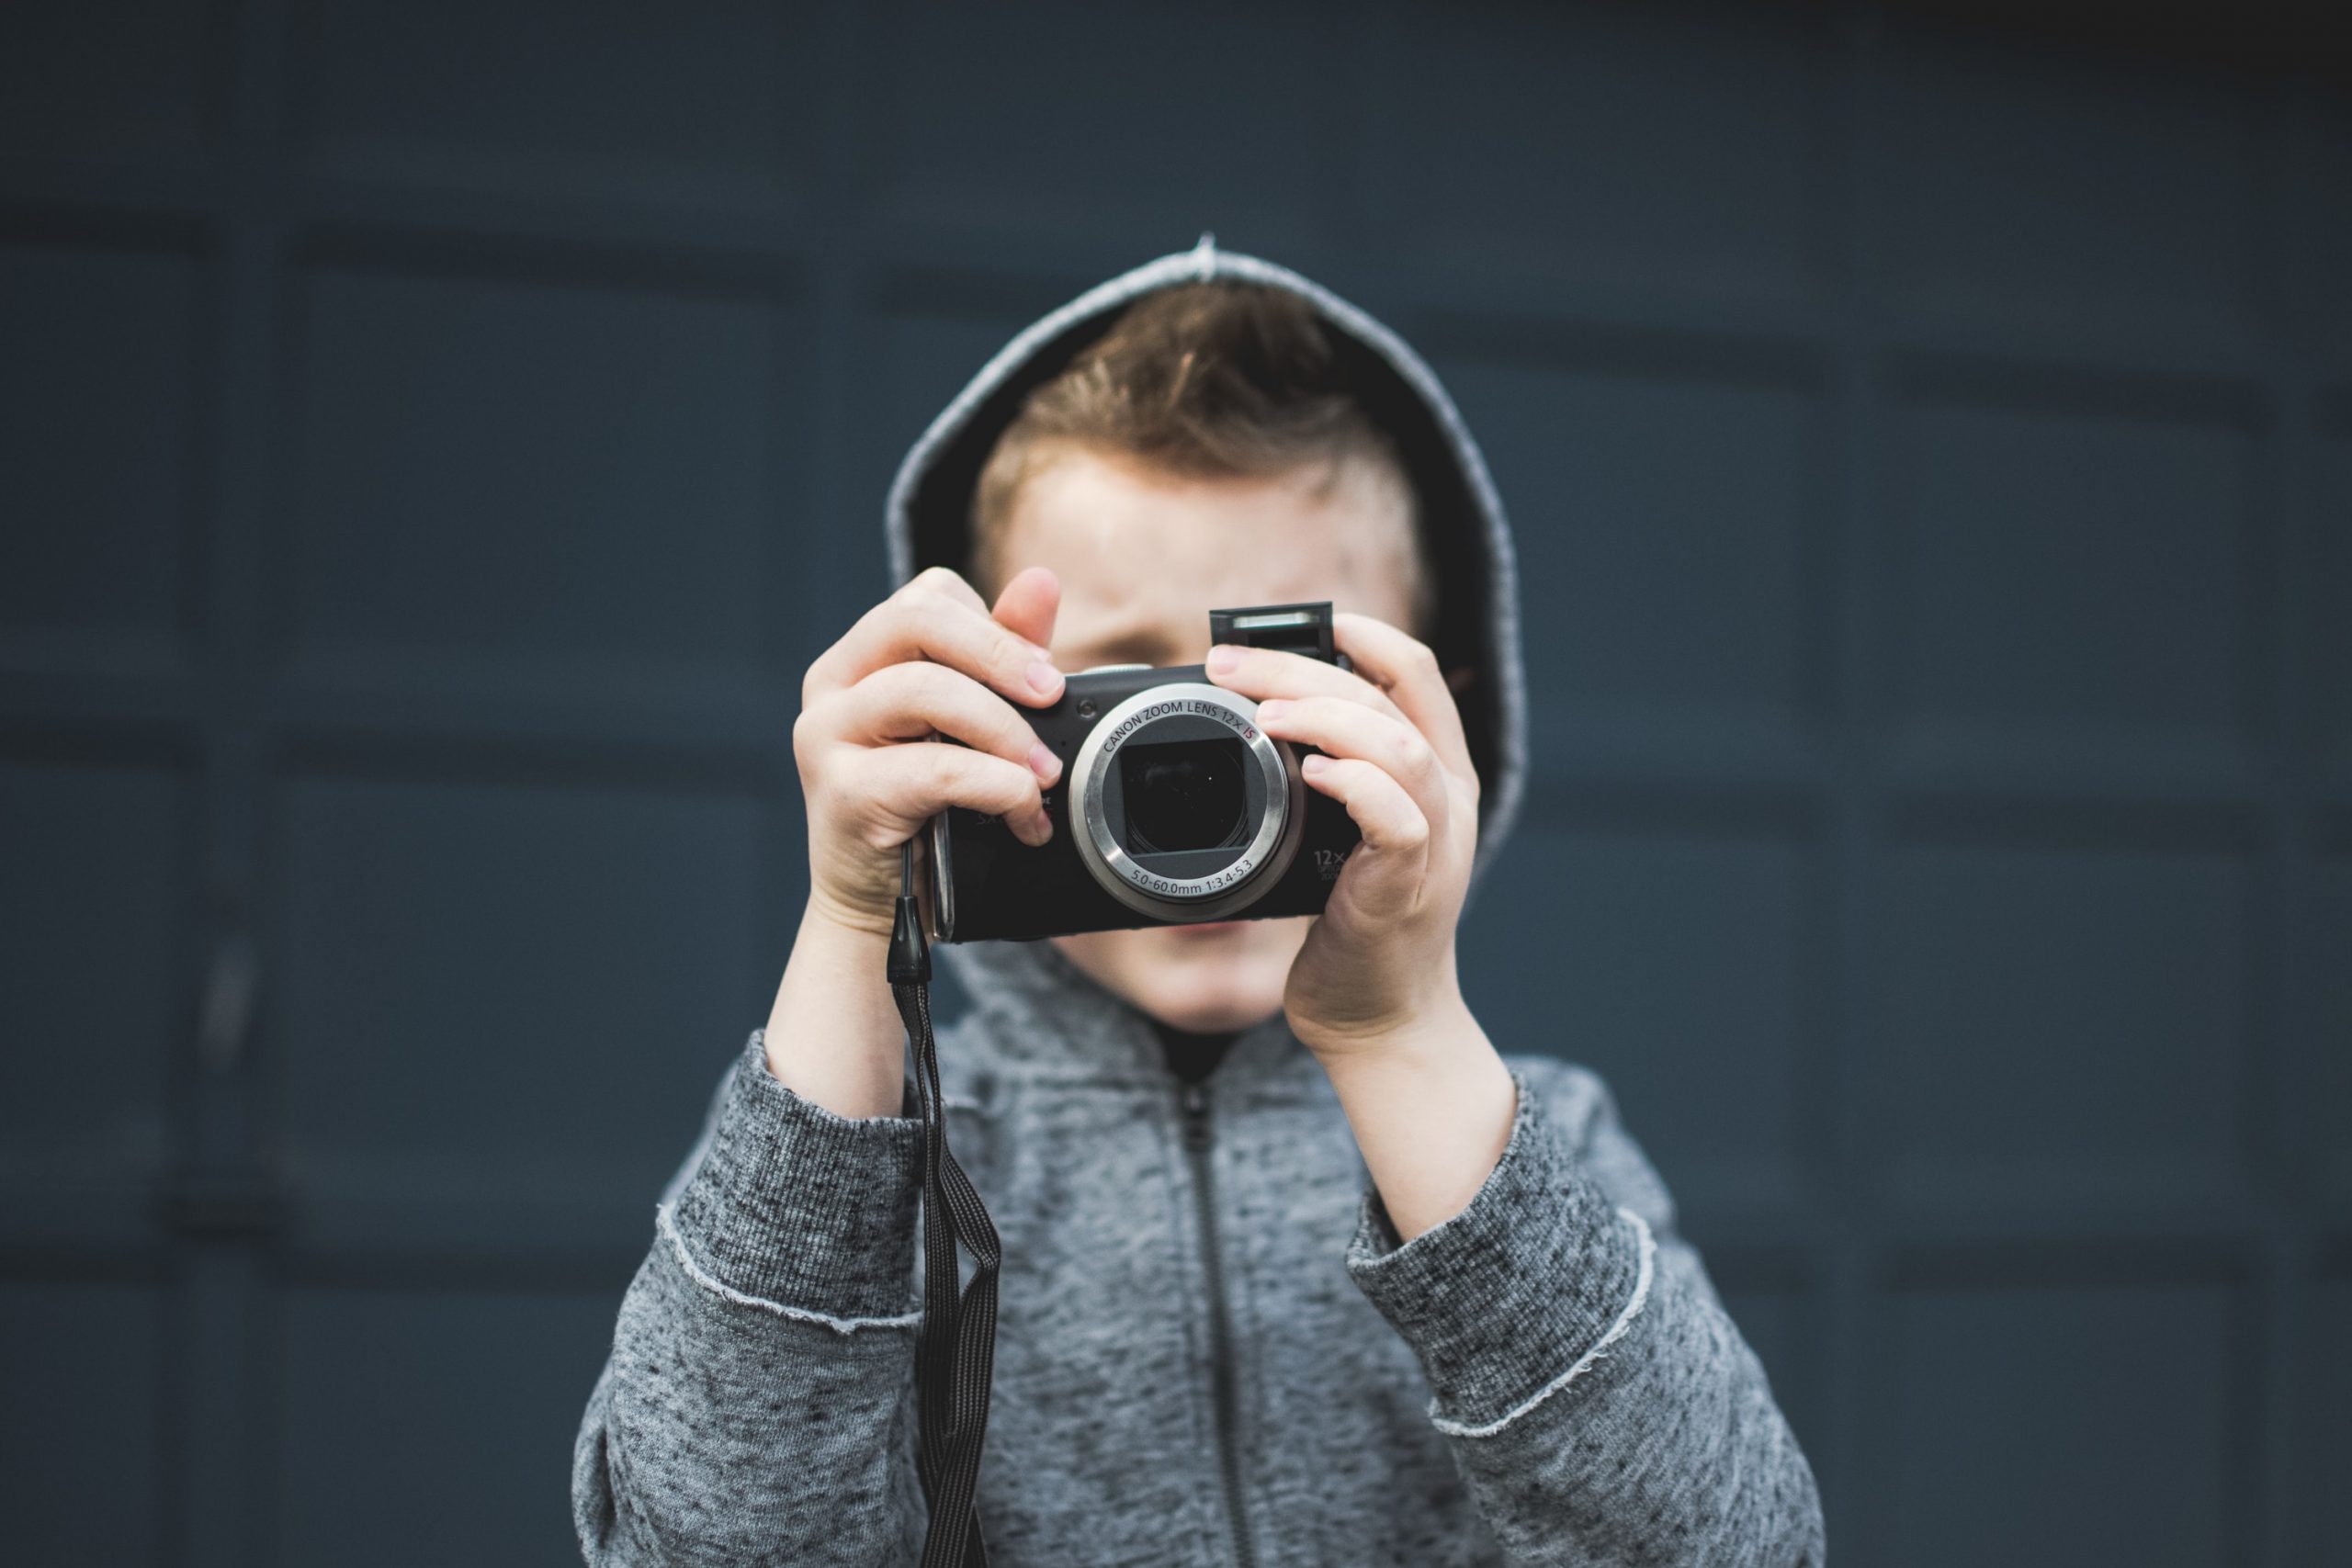 Чи можуть дитину фотографувати без згоди батьків та розміщувати фото для публічного доступу?